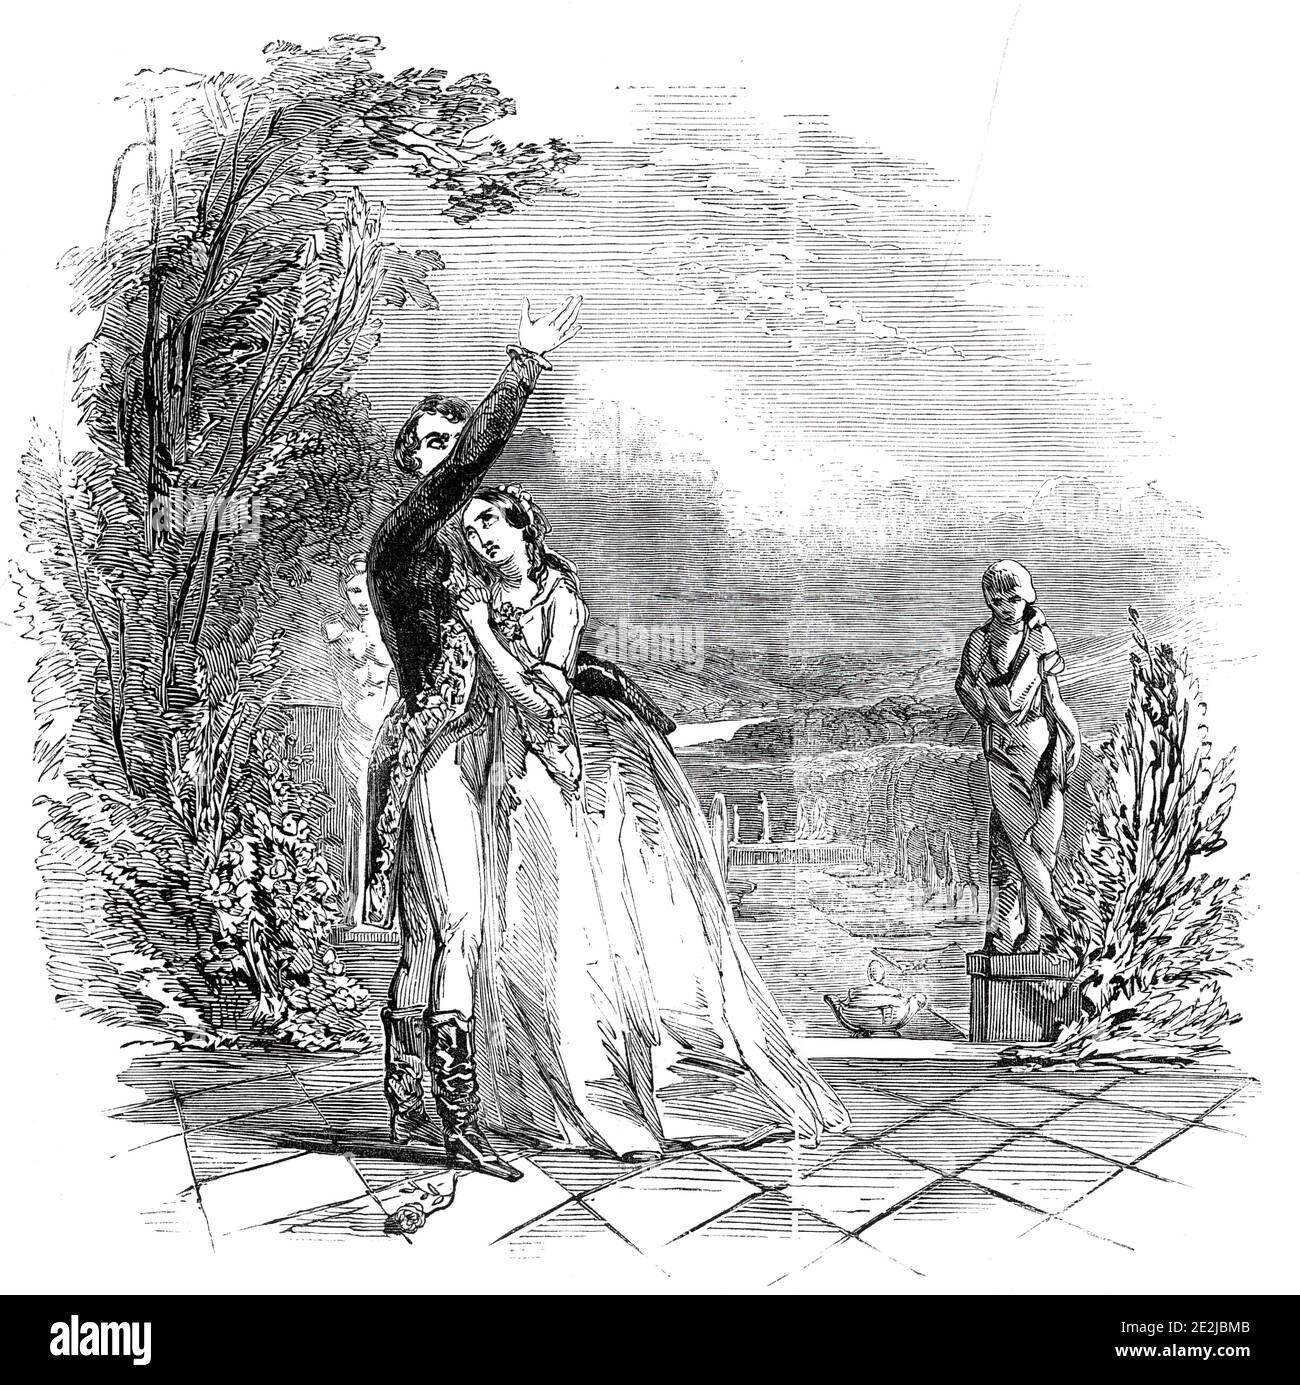 Scena da "la Signora di Lione" al Teatro Haymarket, 1845. Produzione teatrale londinese di "la Signora di Lione; o, Amore e Pride", un melodramma romantico scritto nel 1838 da Edward Bulwer-Lytton, 1° barone Lytton. '...la prima scena del secondo atto...Claude Melnotte (MR Anderson), fingendo di essere il Principe di Como, sta parlando a Paolina (la signorina Helen Fawcit) del suo palazzo immaginario...'. Da "Illustrated London News", 1845, Vol VII Foto Stock